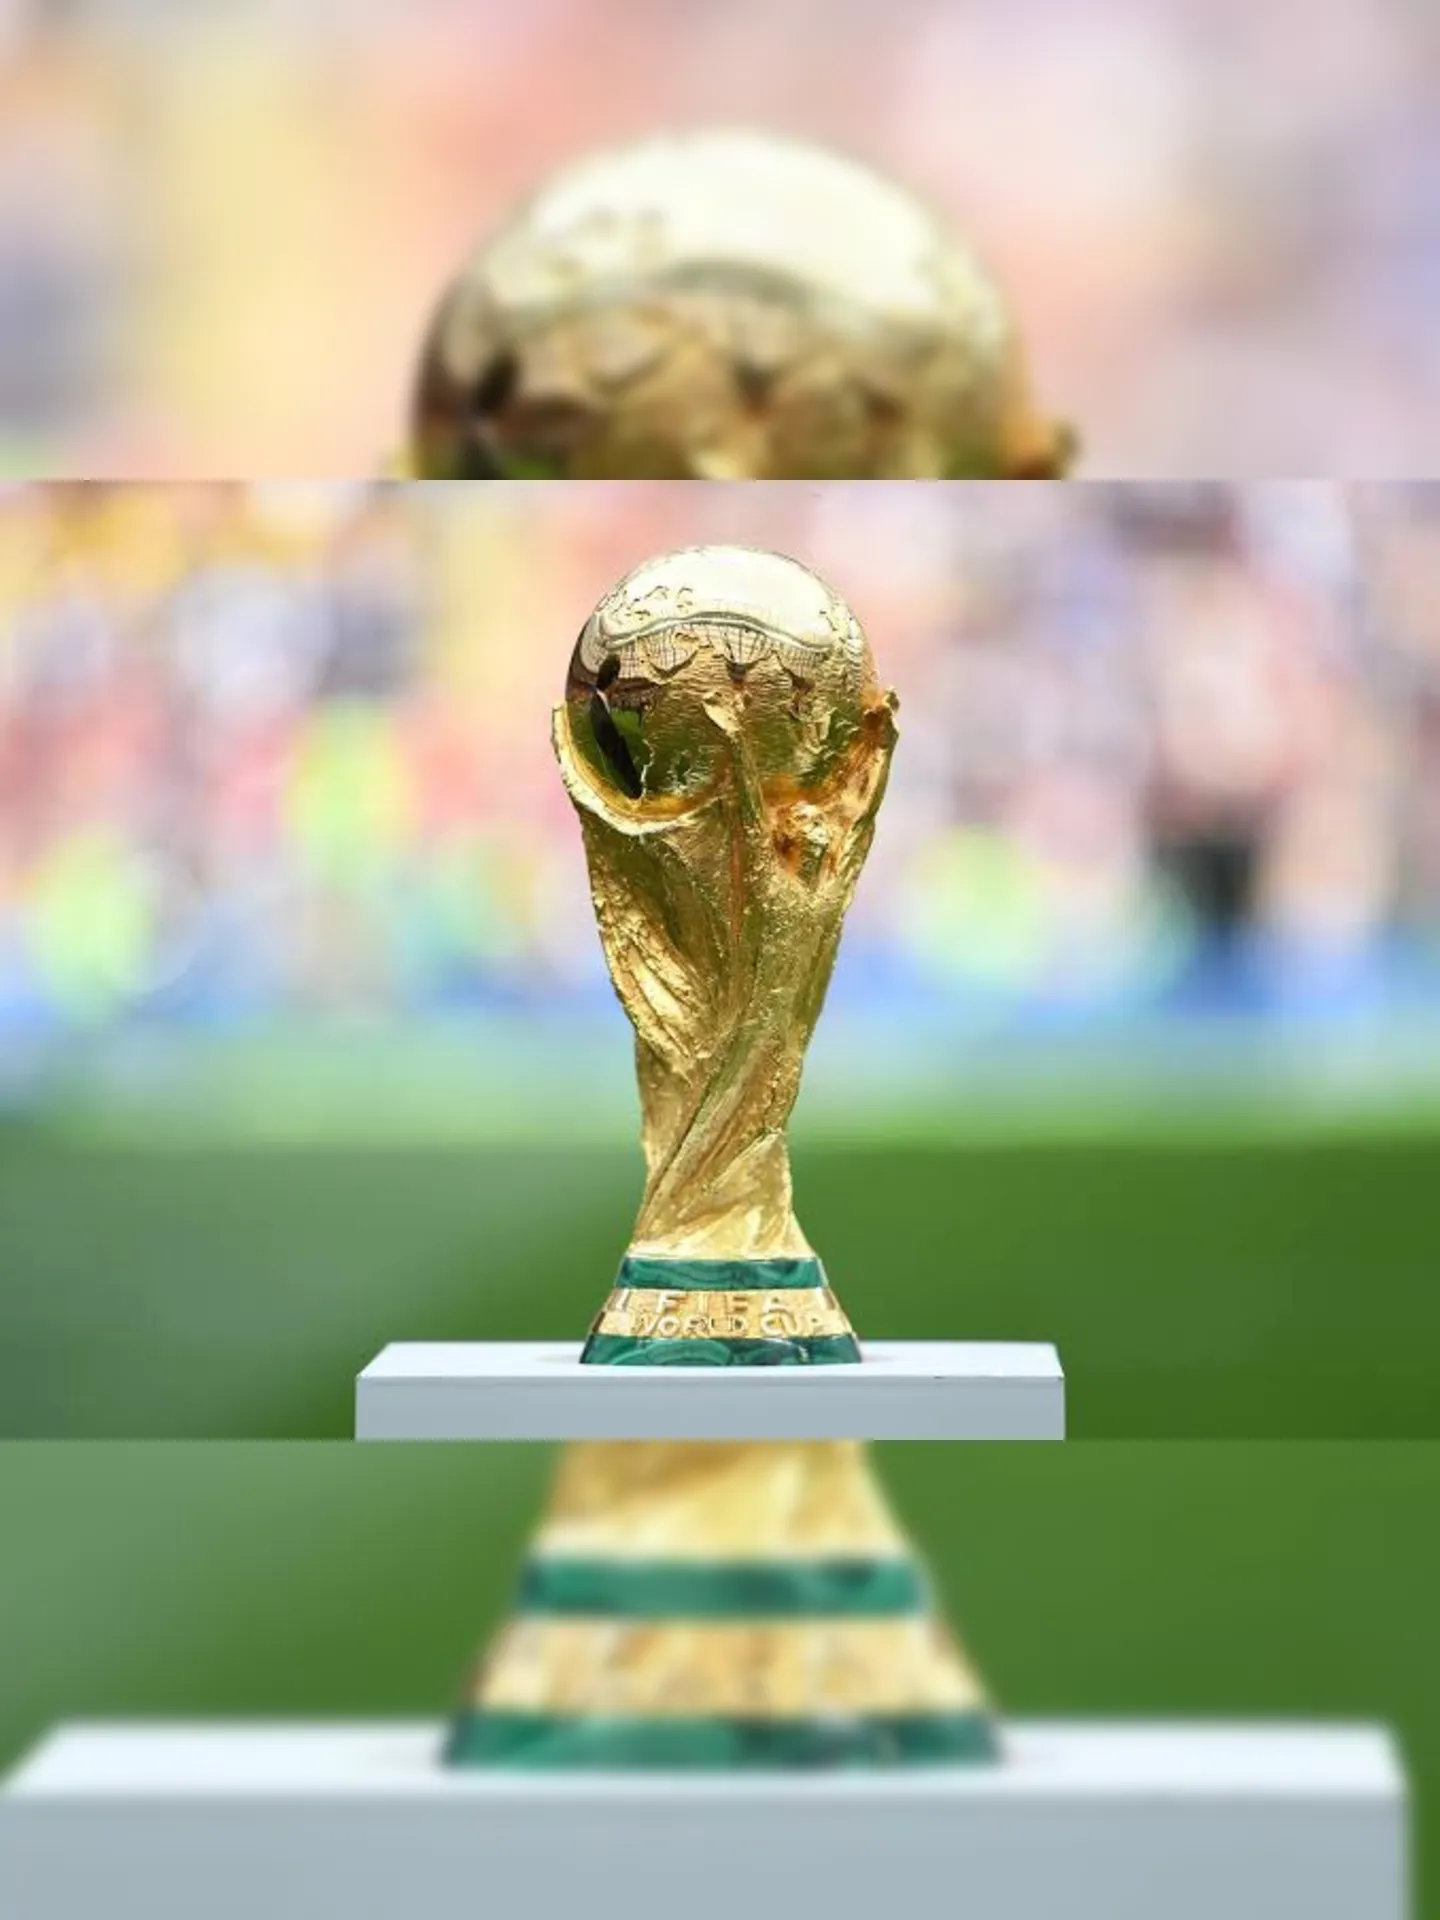 Copa do Mundo começa em 30 dias